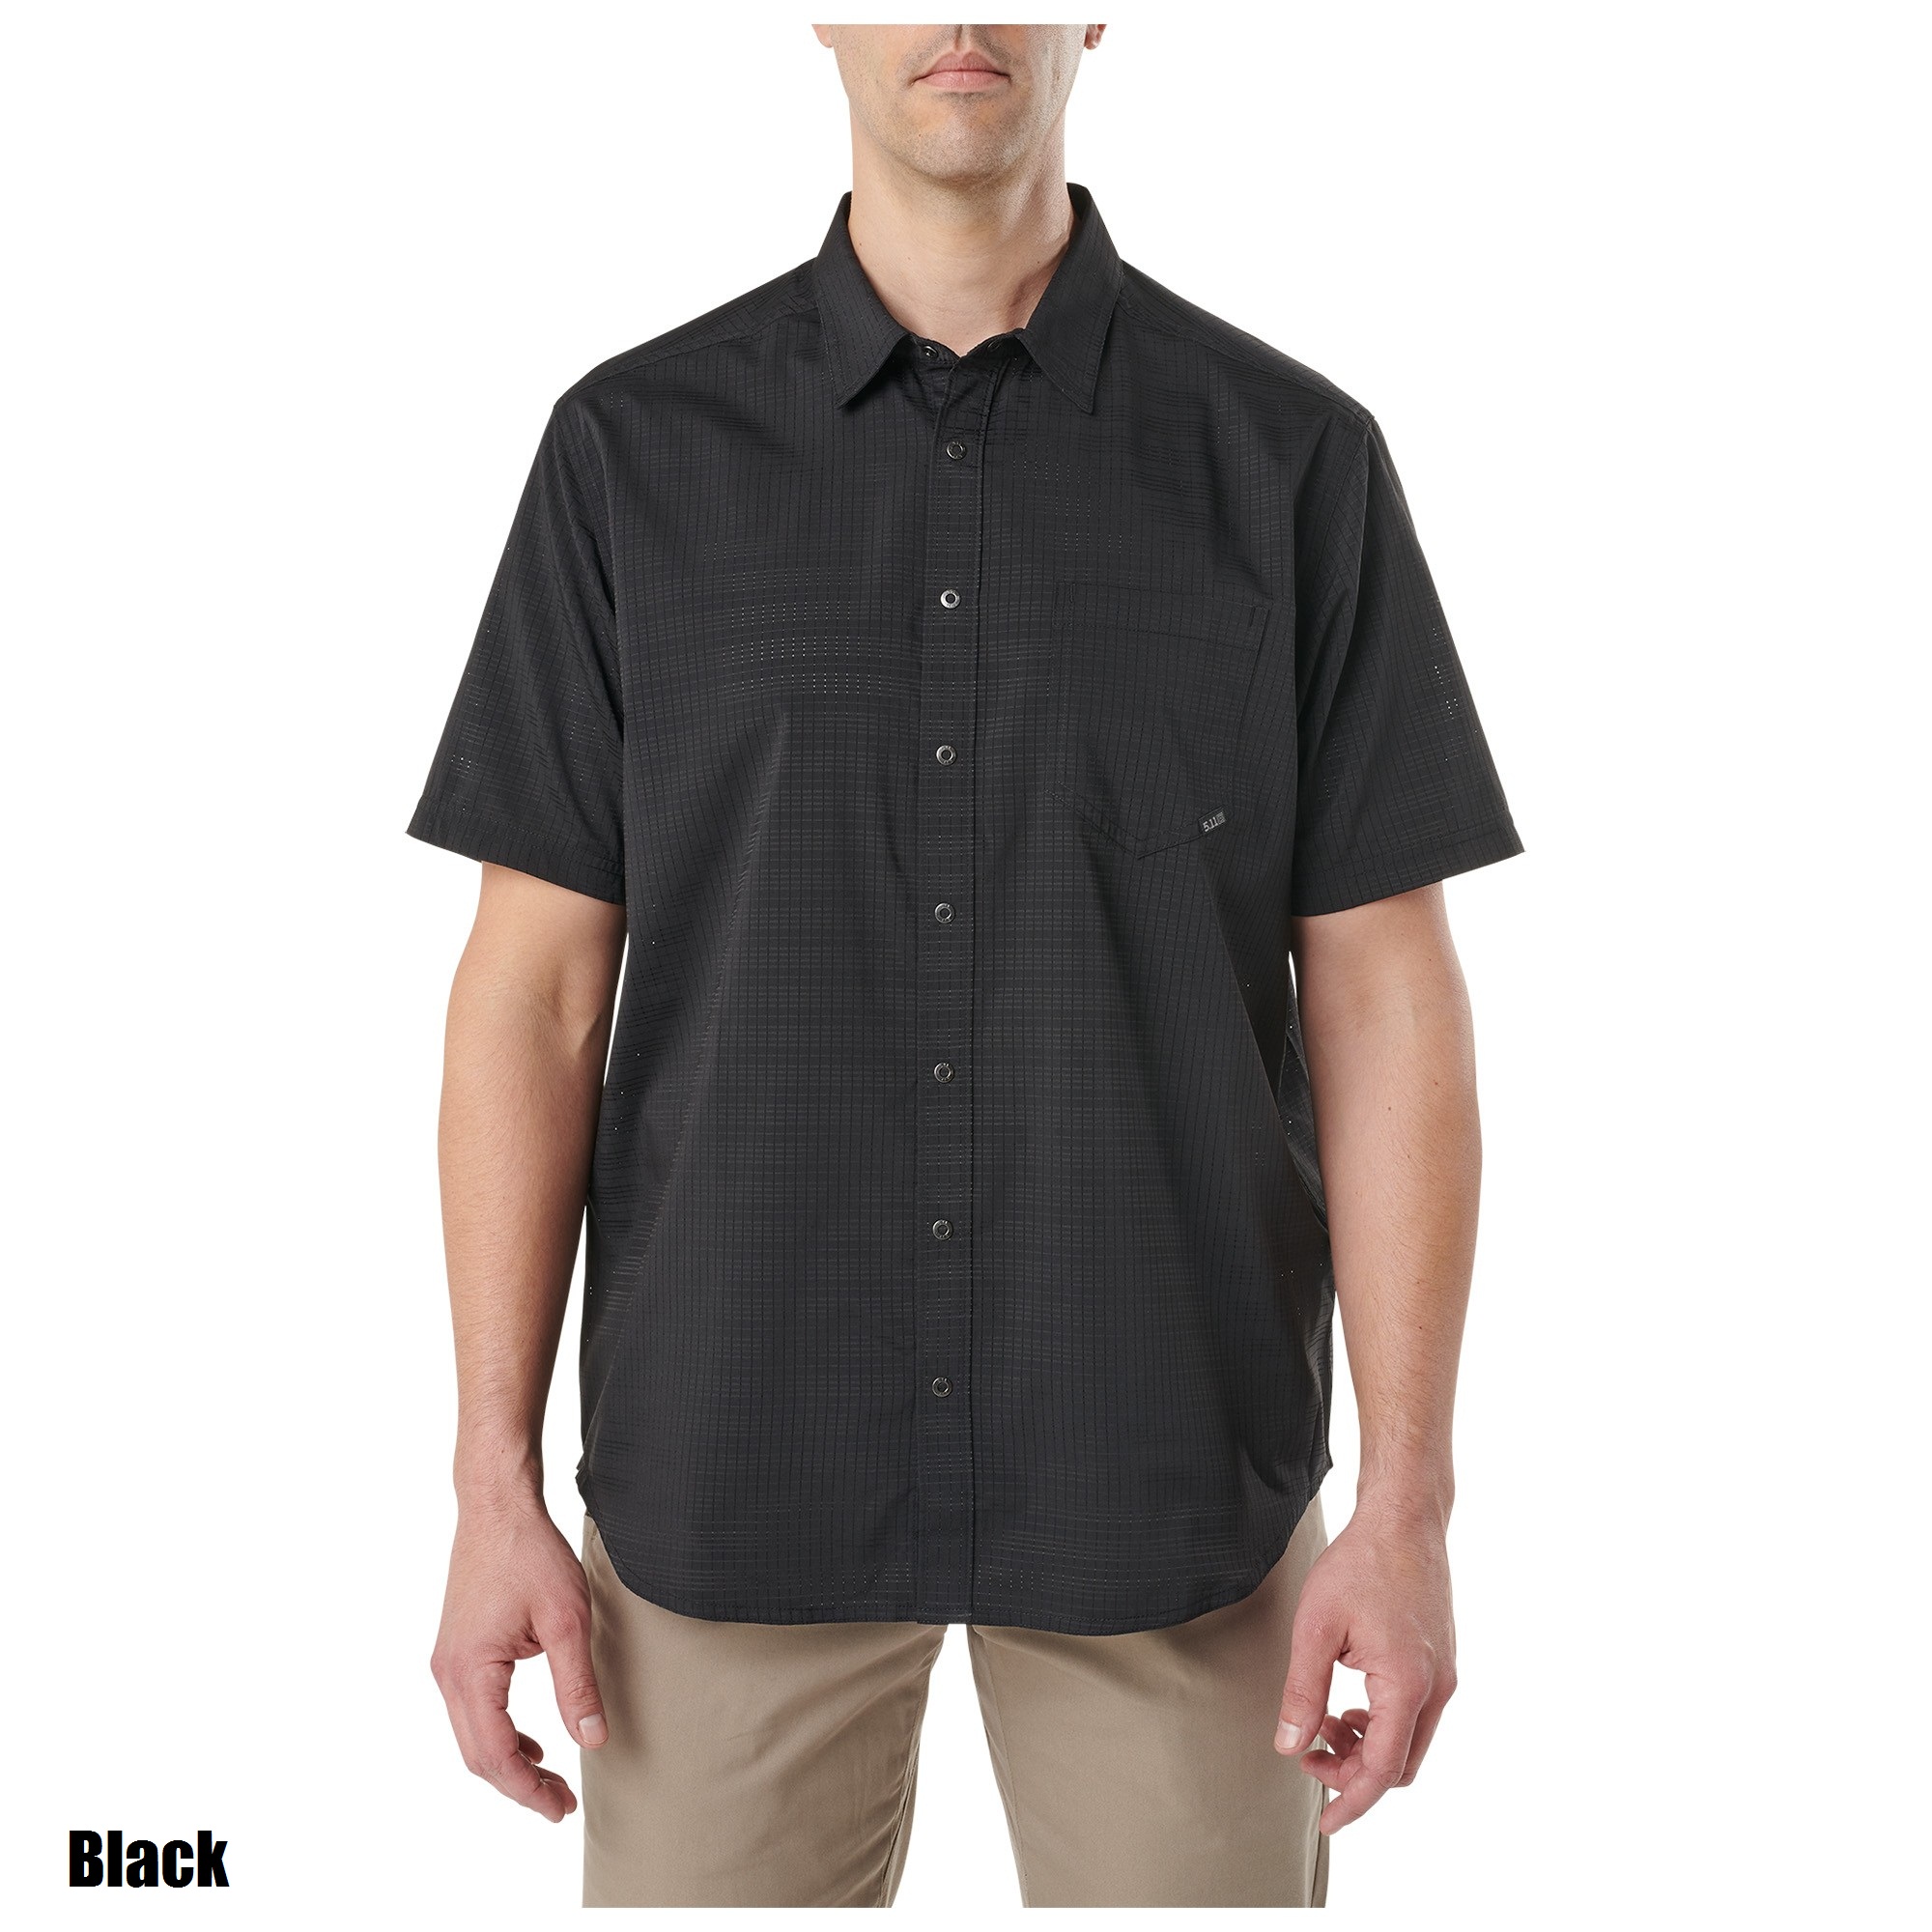 5.11 Aerial Short Sleeve Shirt